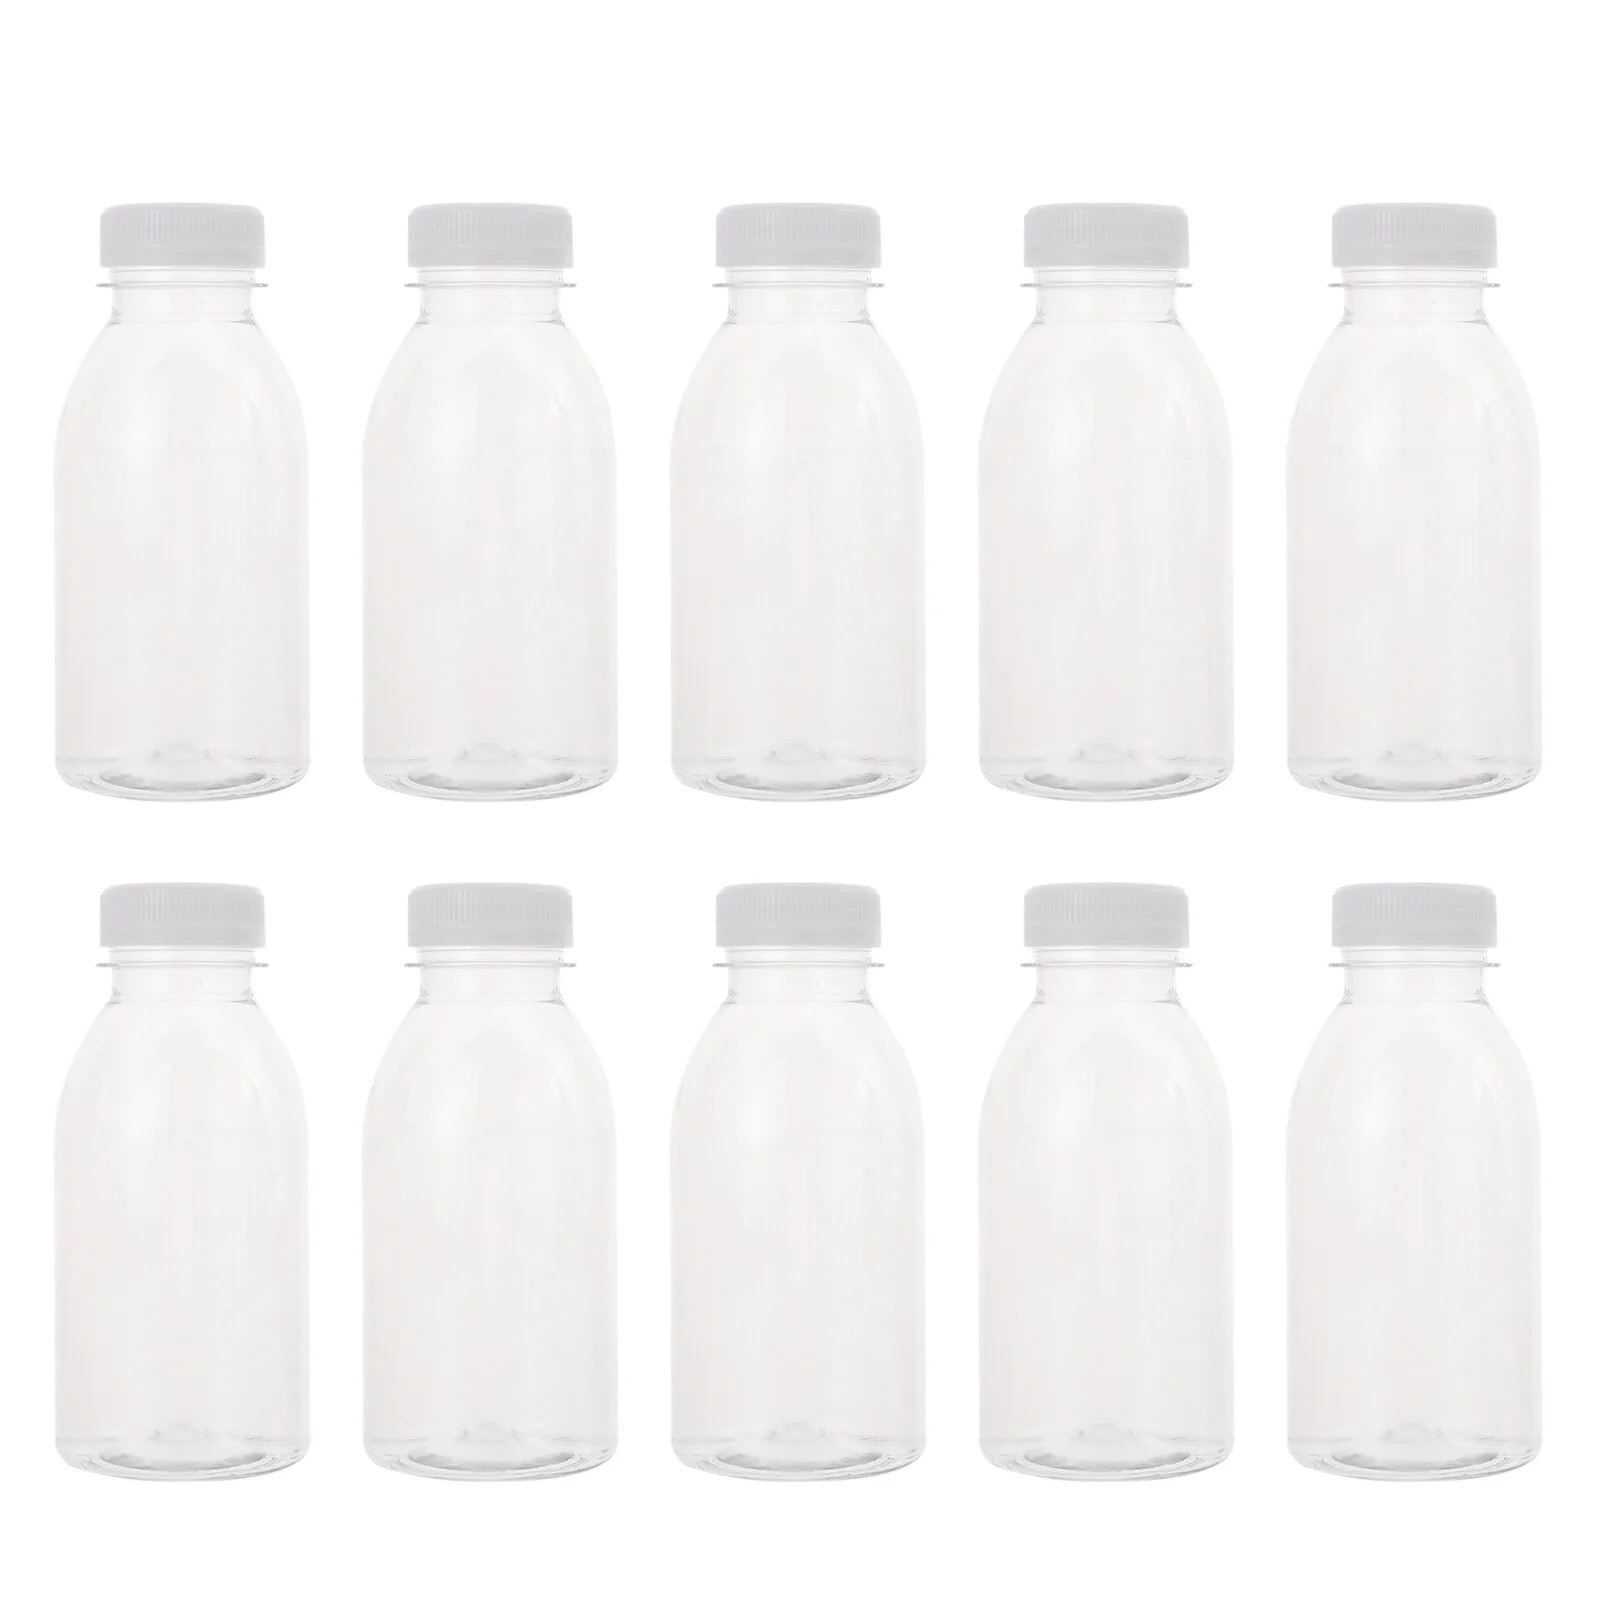 

Бутылка для сока, молока многоразовые бутылки для напитков, удобное хранение, Практичный Прочный напиток